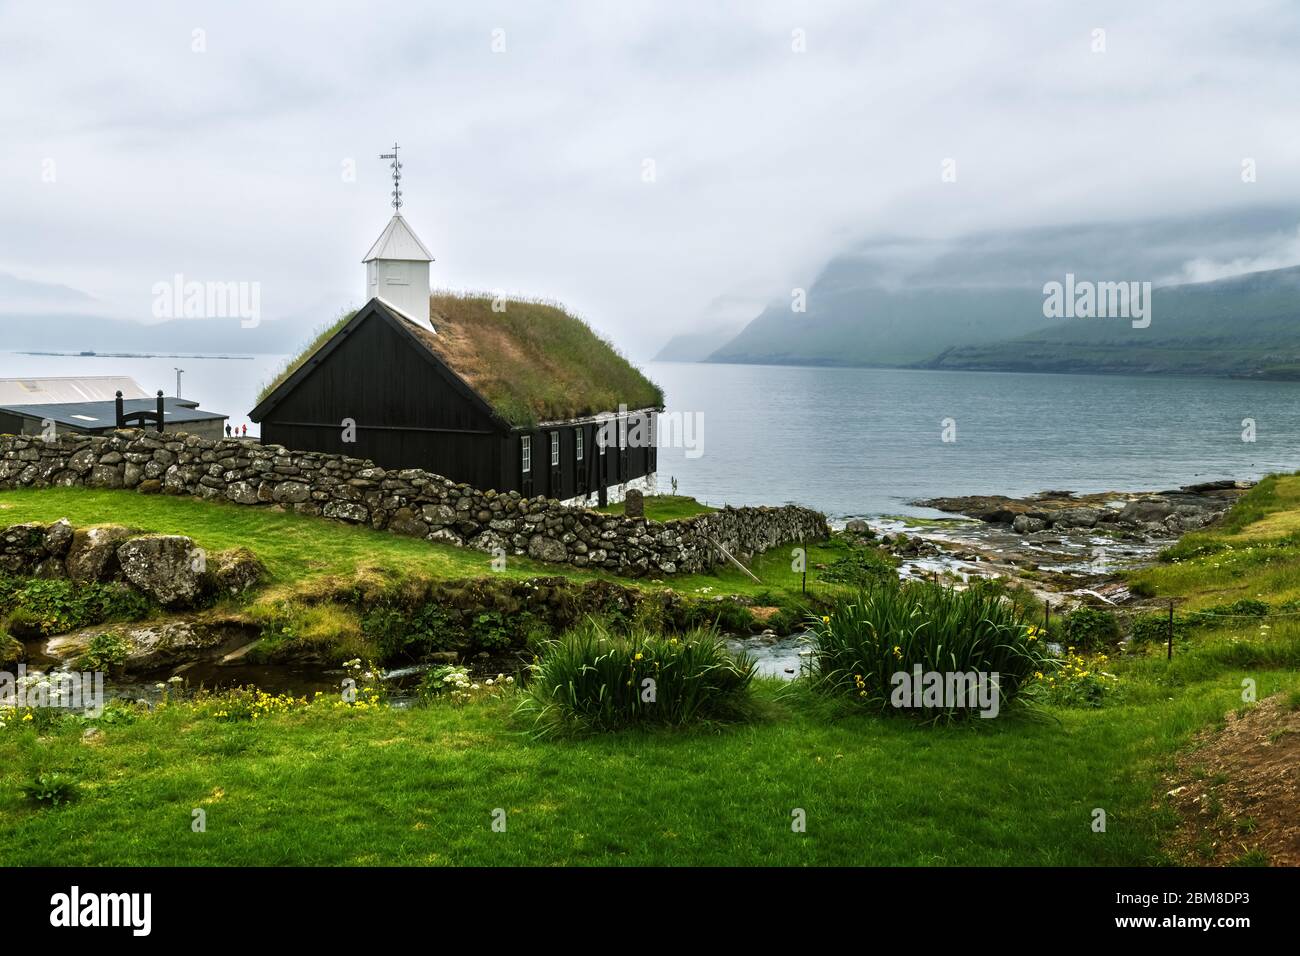 Vue d'été sur l'église traditionnelle au sommet d'un gazon dans le village de faroese. Paysage de beauté avec fjord de brouillard et hautes montagnes. Île de Strymoy, îles Féroé, Danemark. Banque D'Images